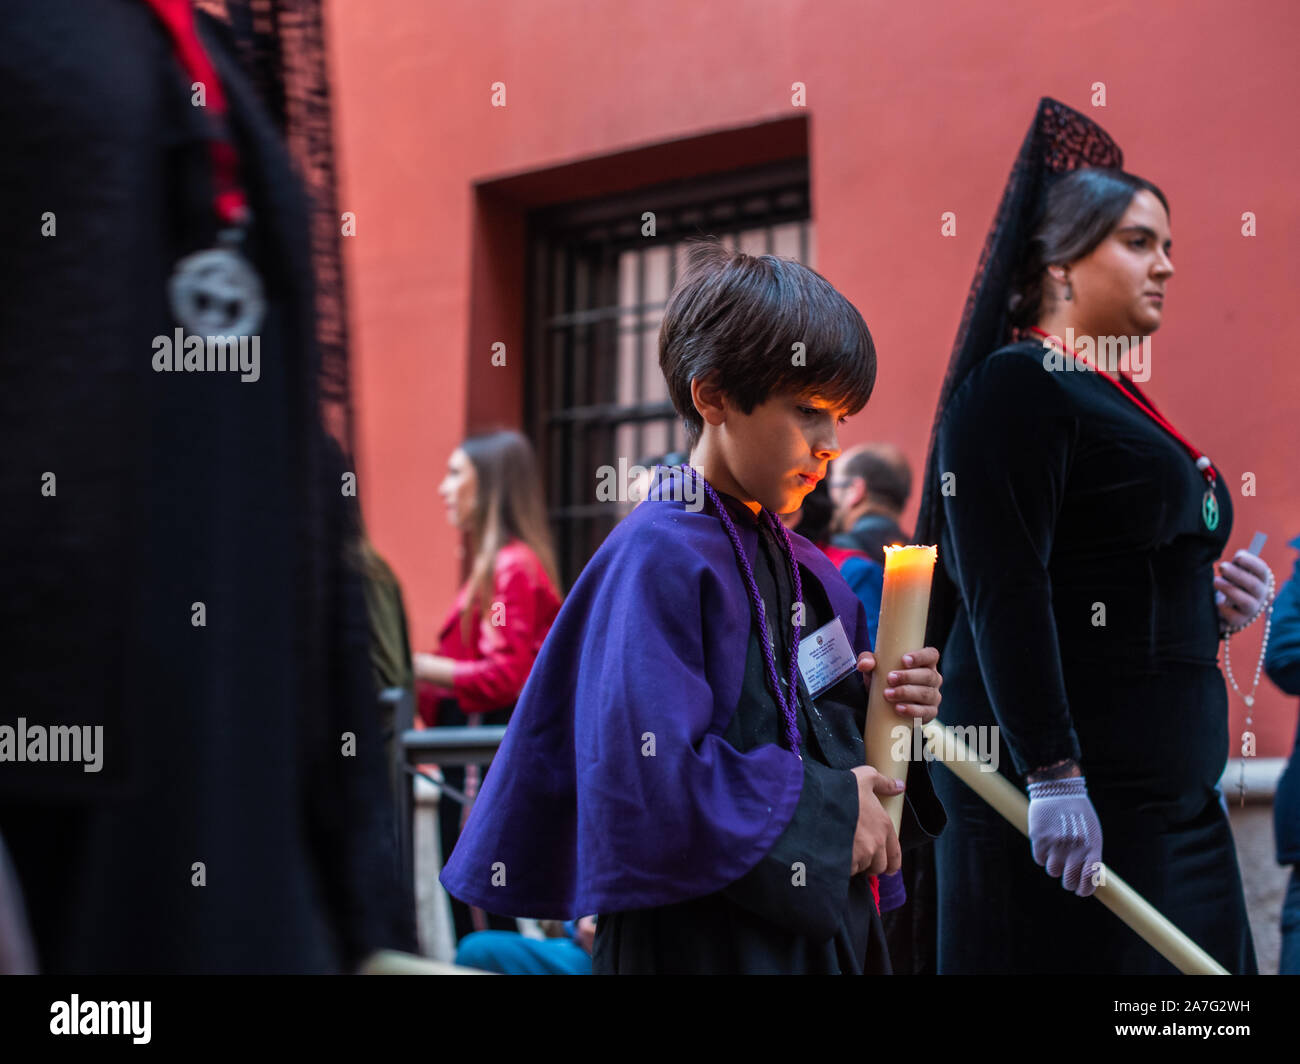 Granada, Spagna - 16 aprile 2019. Uno dei tanti bambini che partecipano alle processioni che effettua durante le vacanze di Pasqua in Spagna. Foto Stock